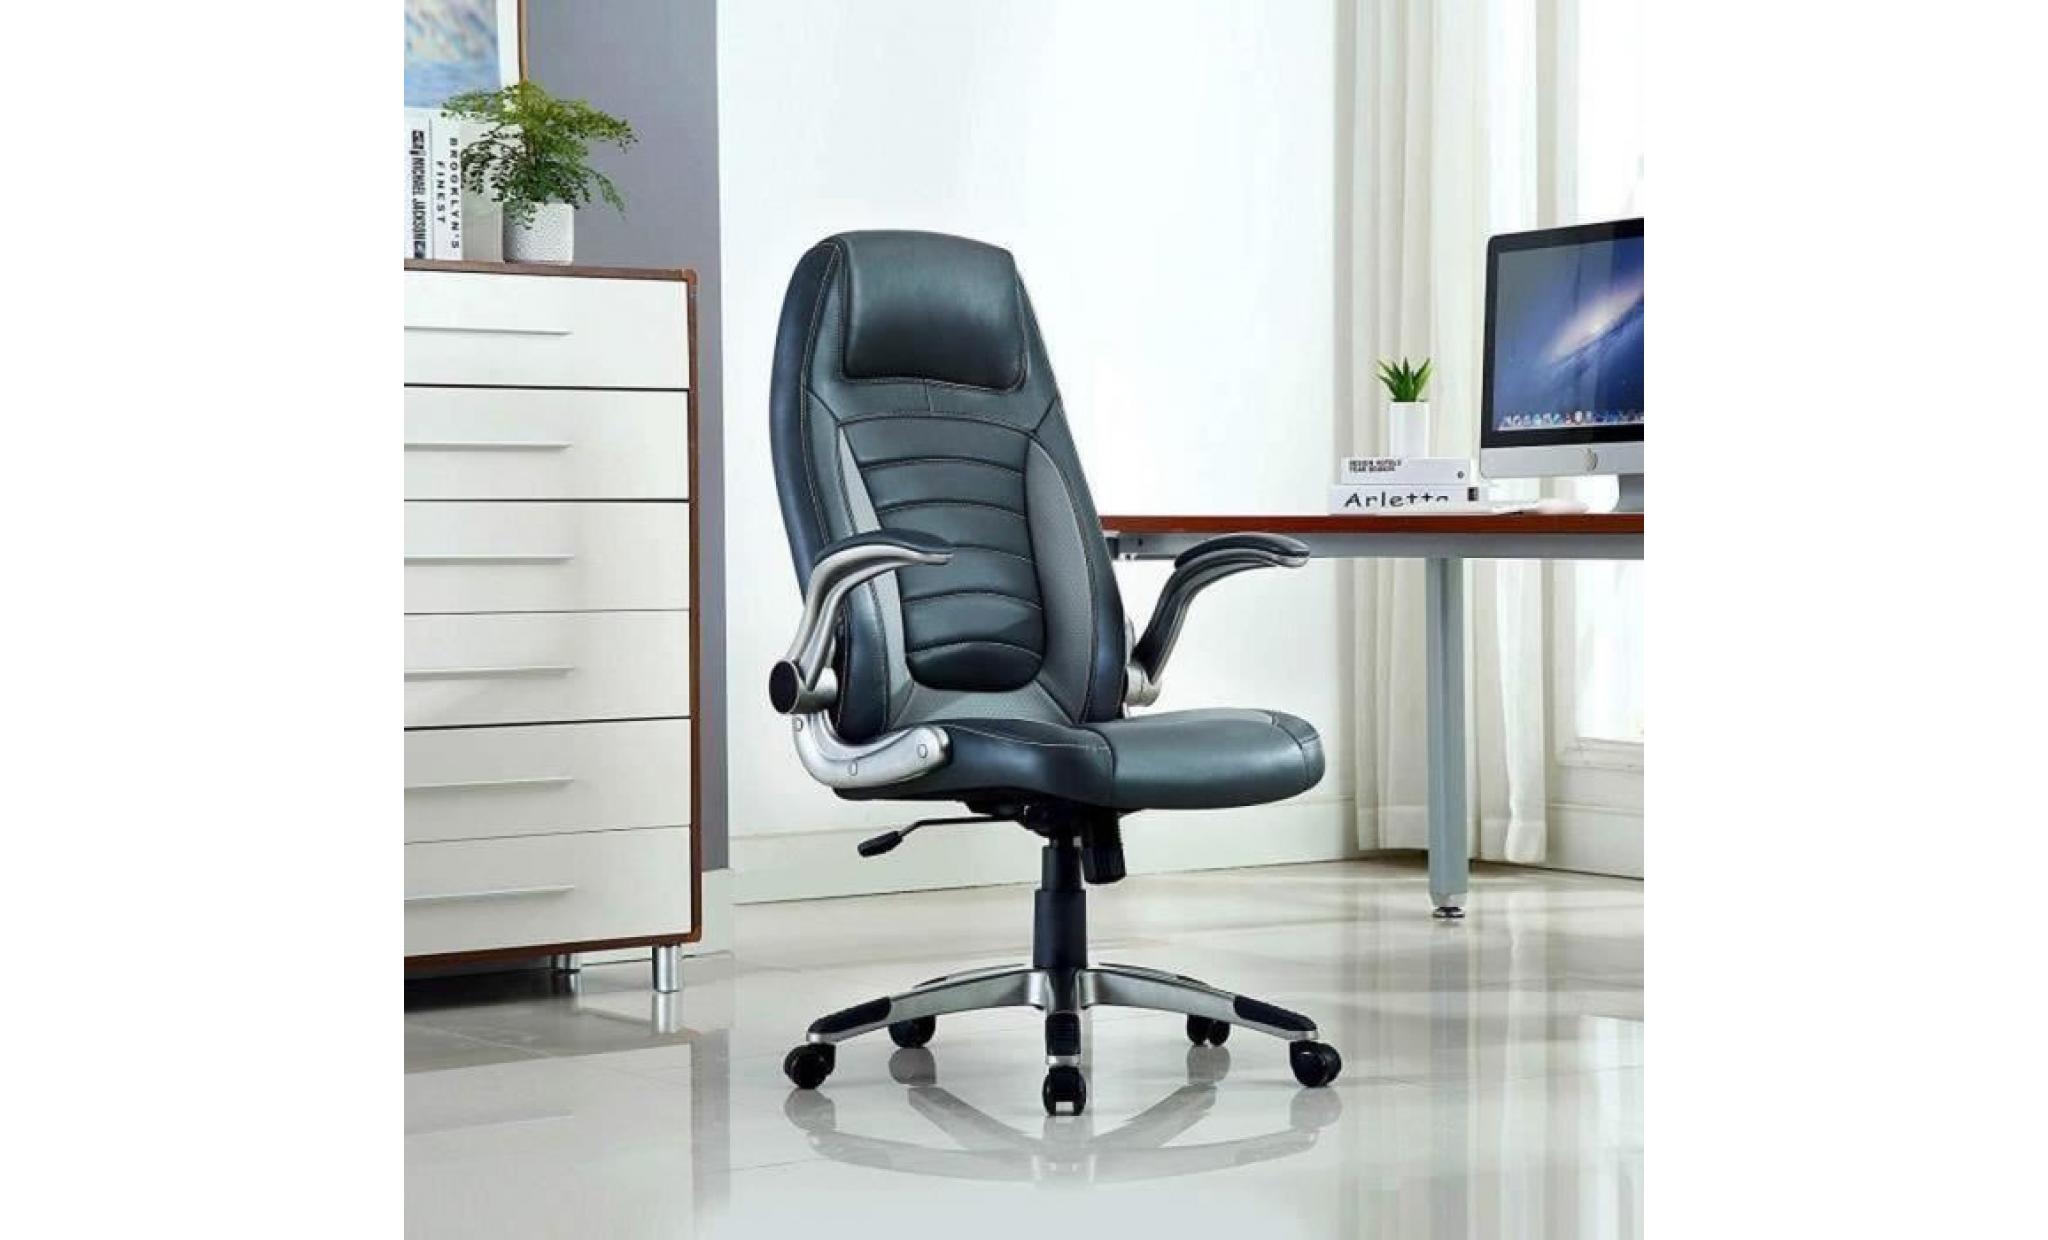 chaise de bureau   fauteuil gamer   siège pu hauteur réglable   chaise d'ordinateur   bleu   intimate wm heart